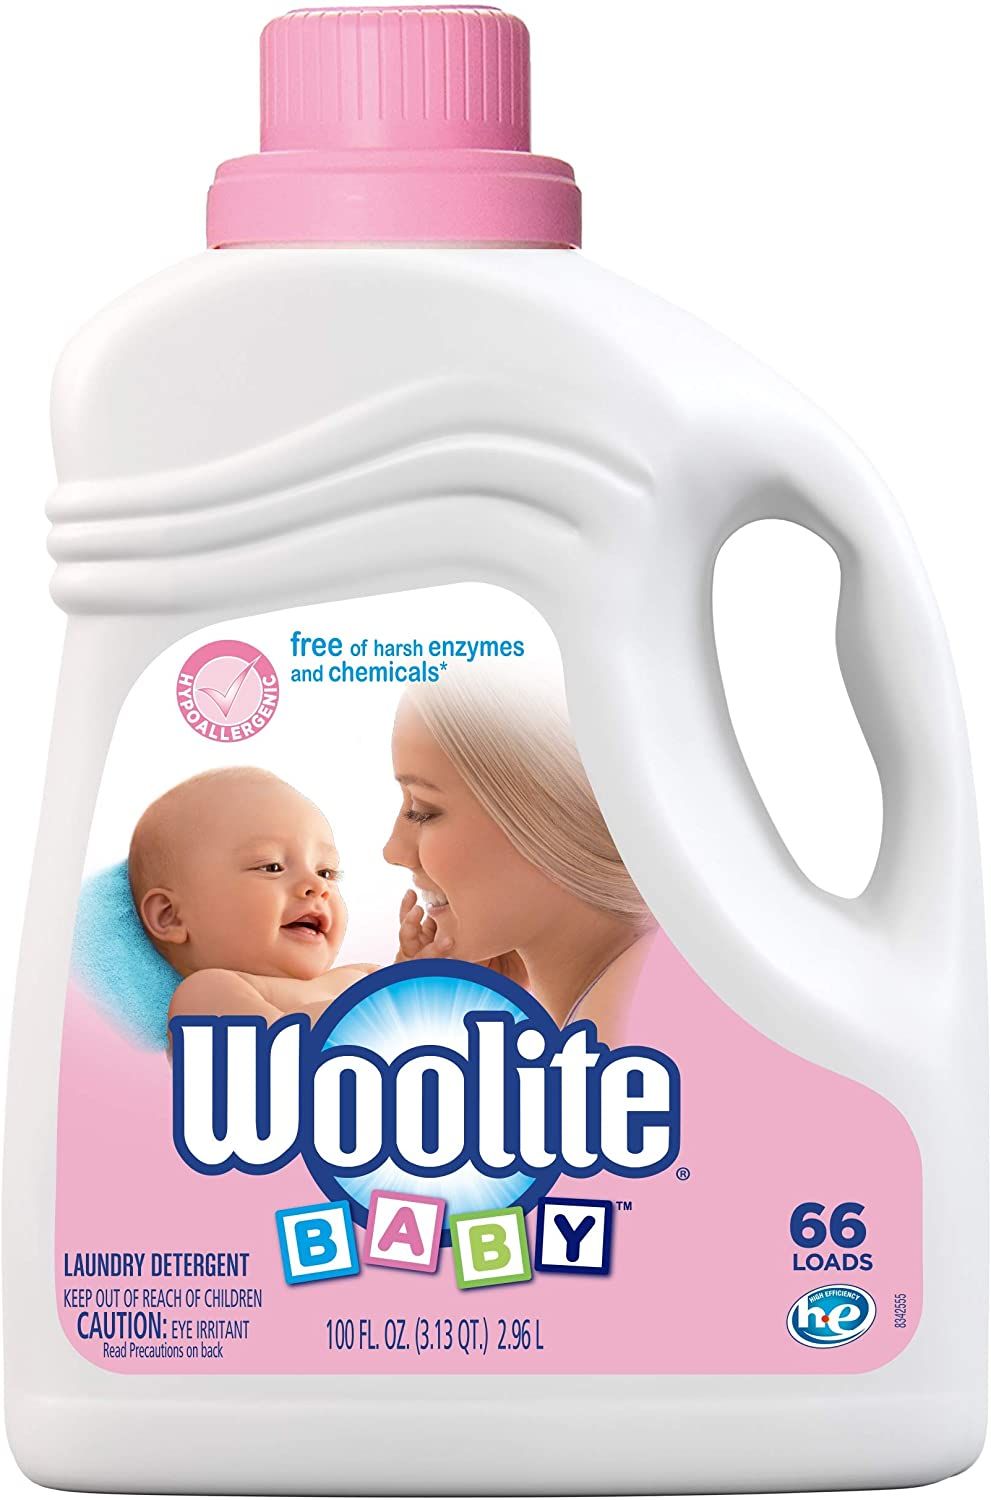 baby laundry detergent australia